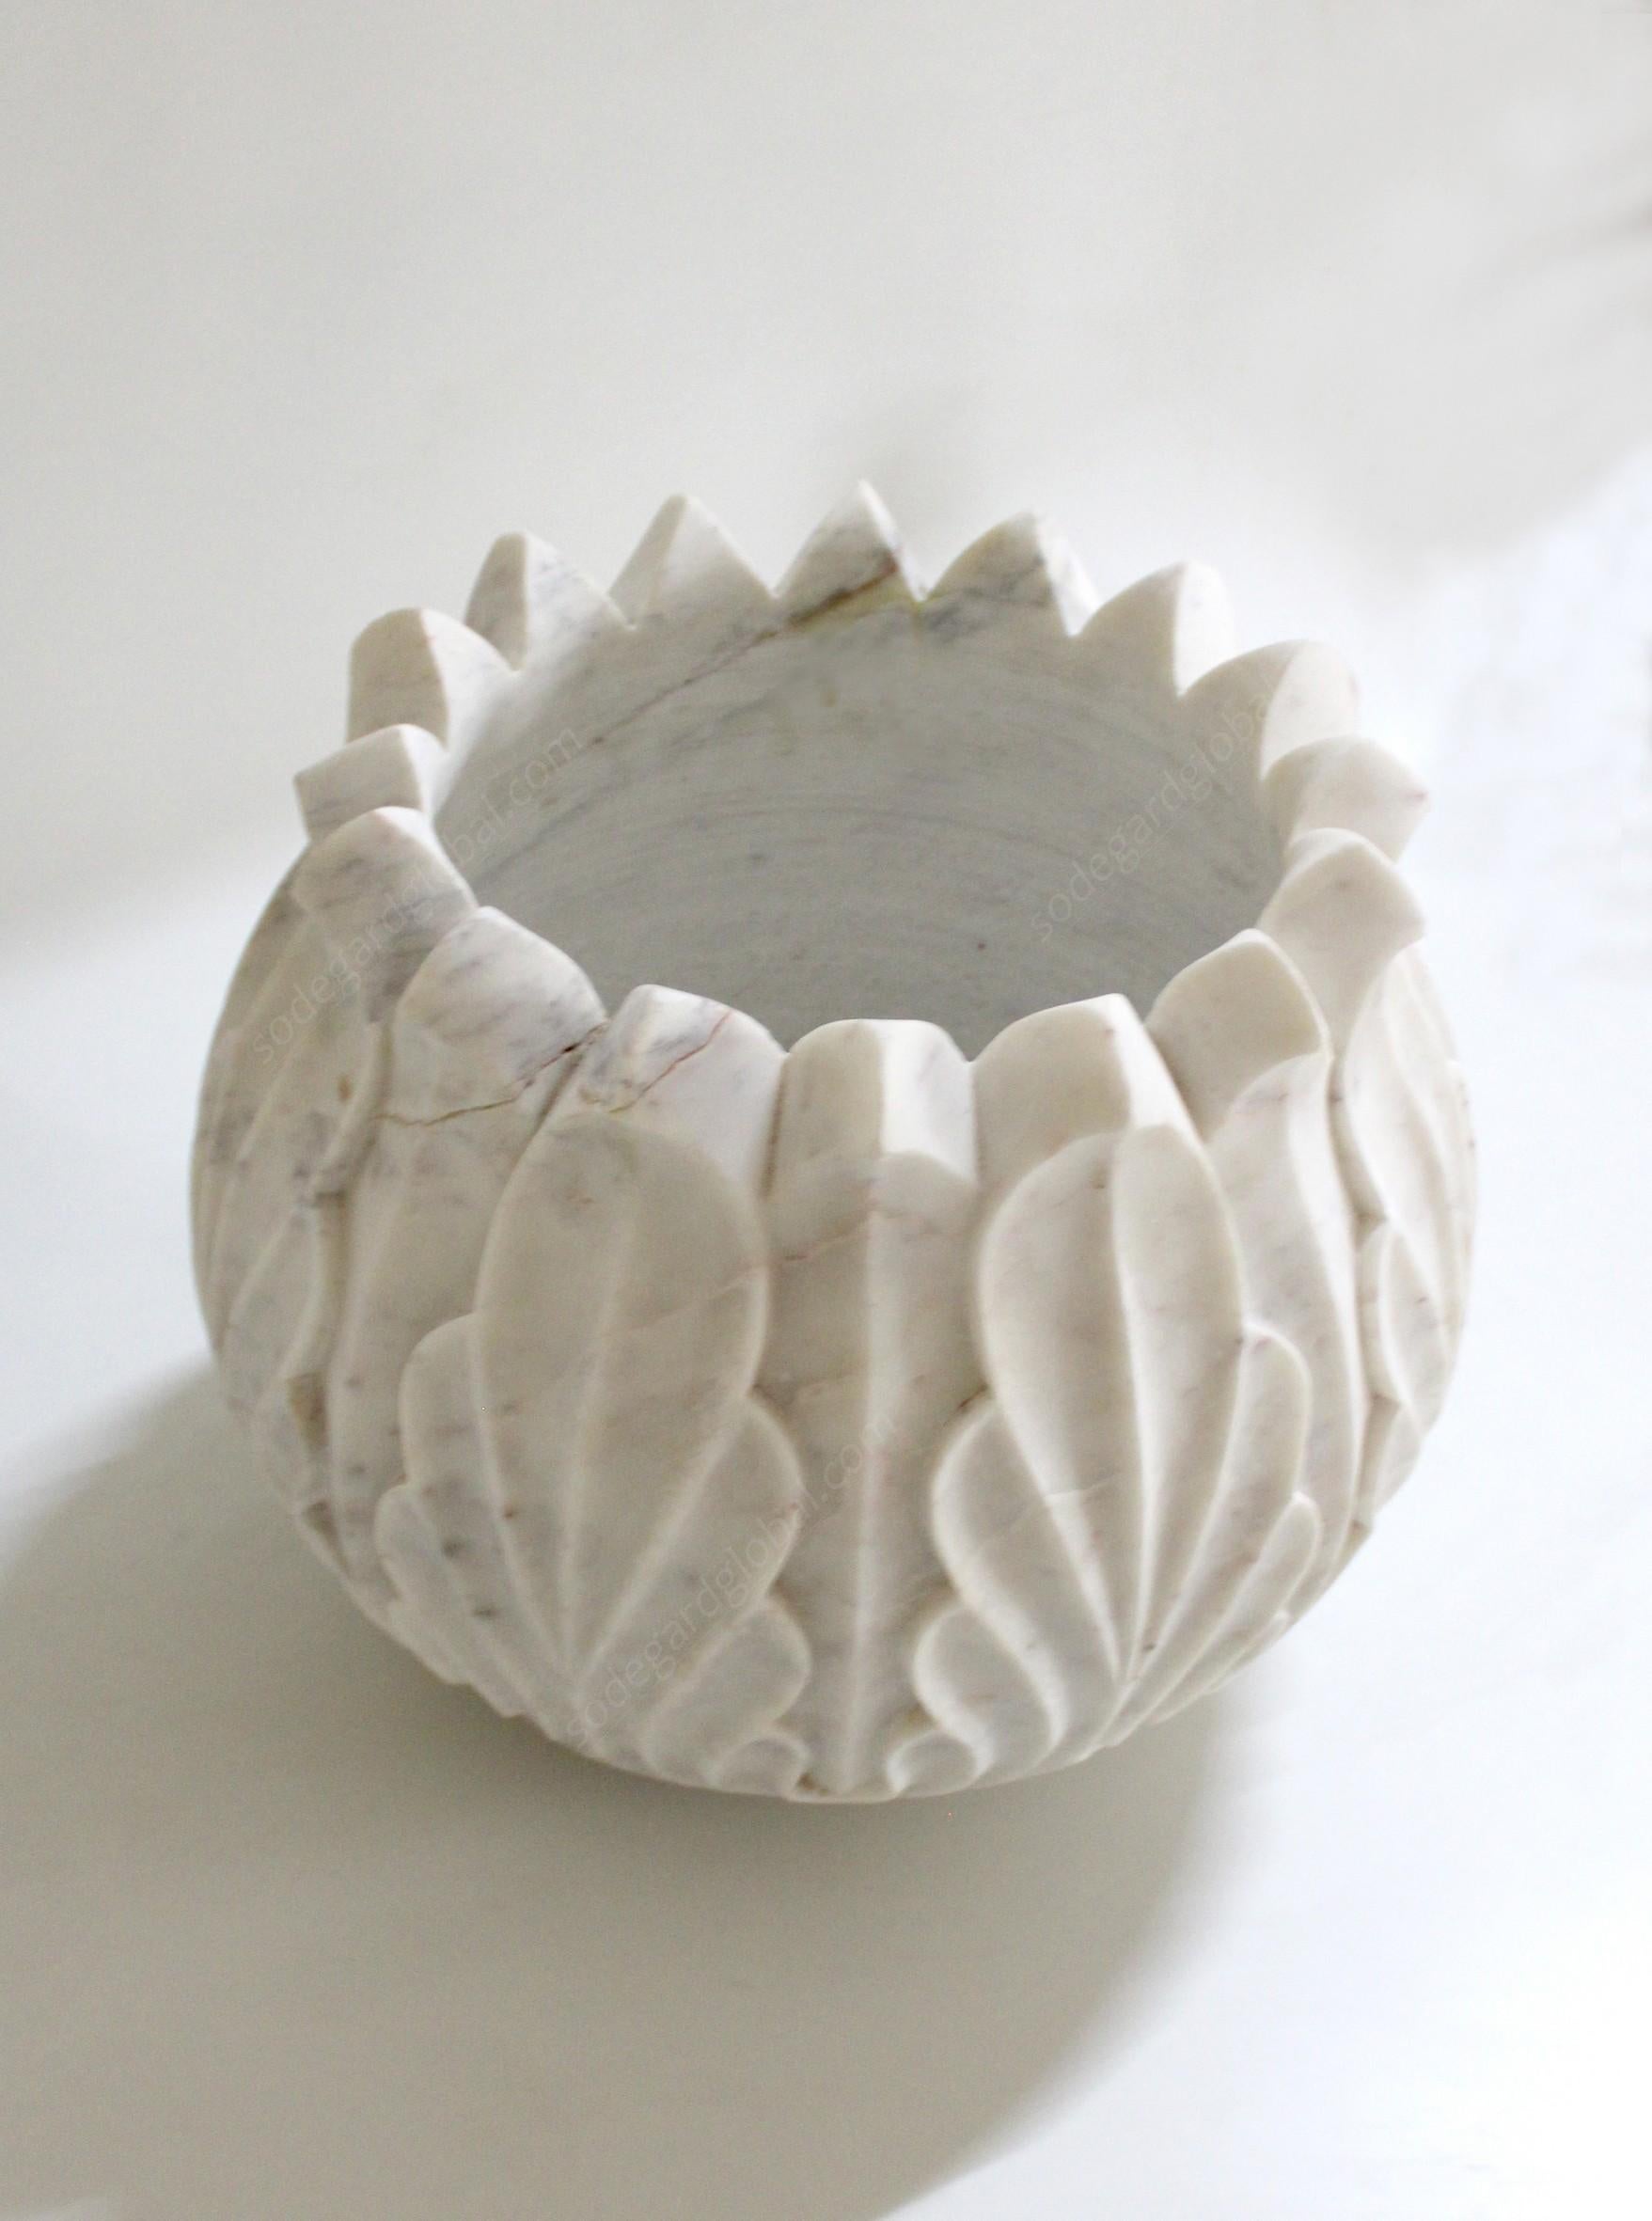 Handgeschnitzt aus einem einzigen Marmorblock, perfekt für den Außenbereich.

Lotus-Topf aus weißem Marmor
Größe - 17